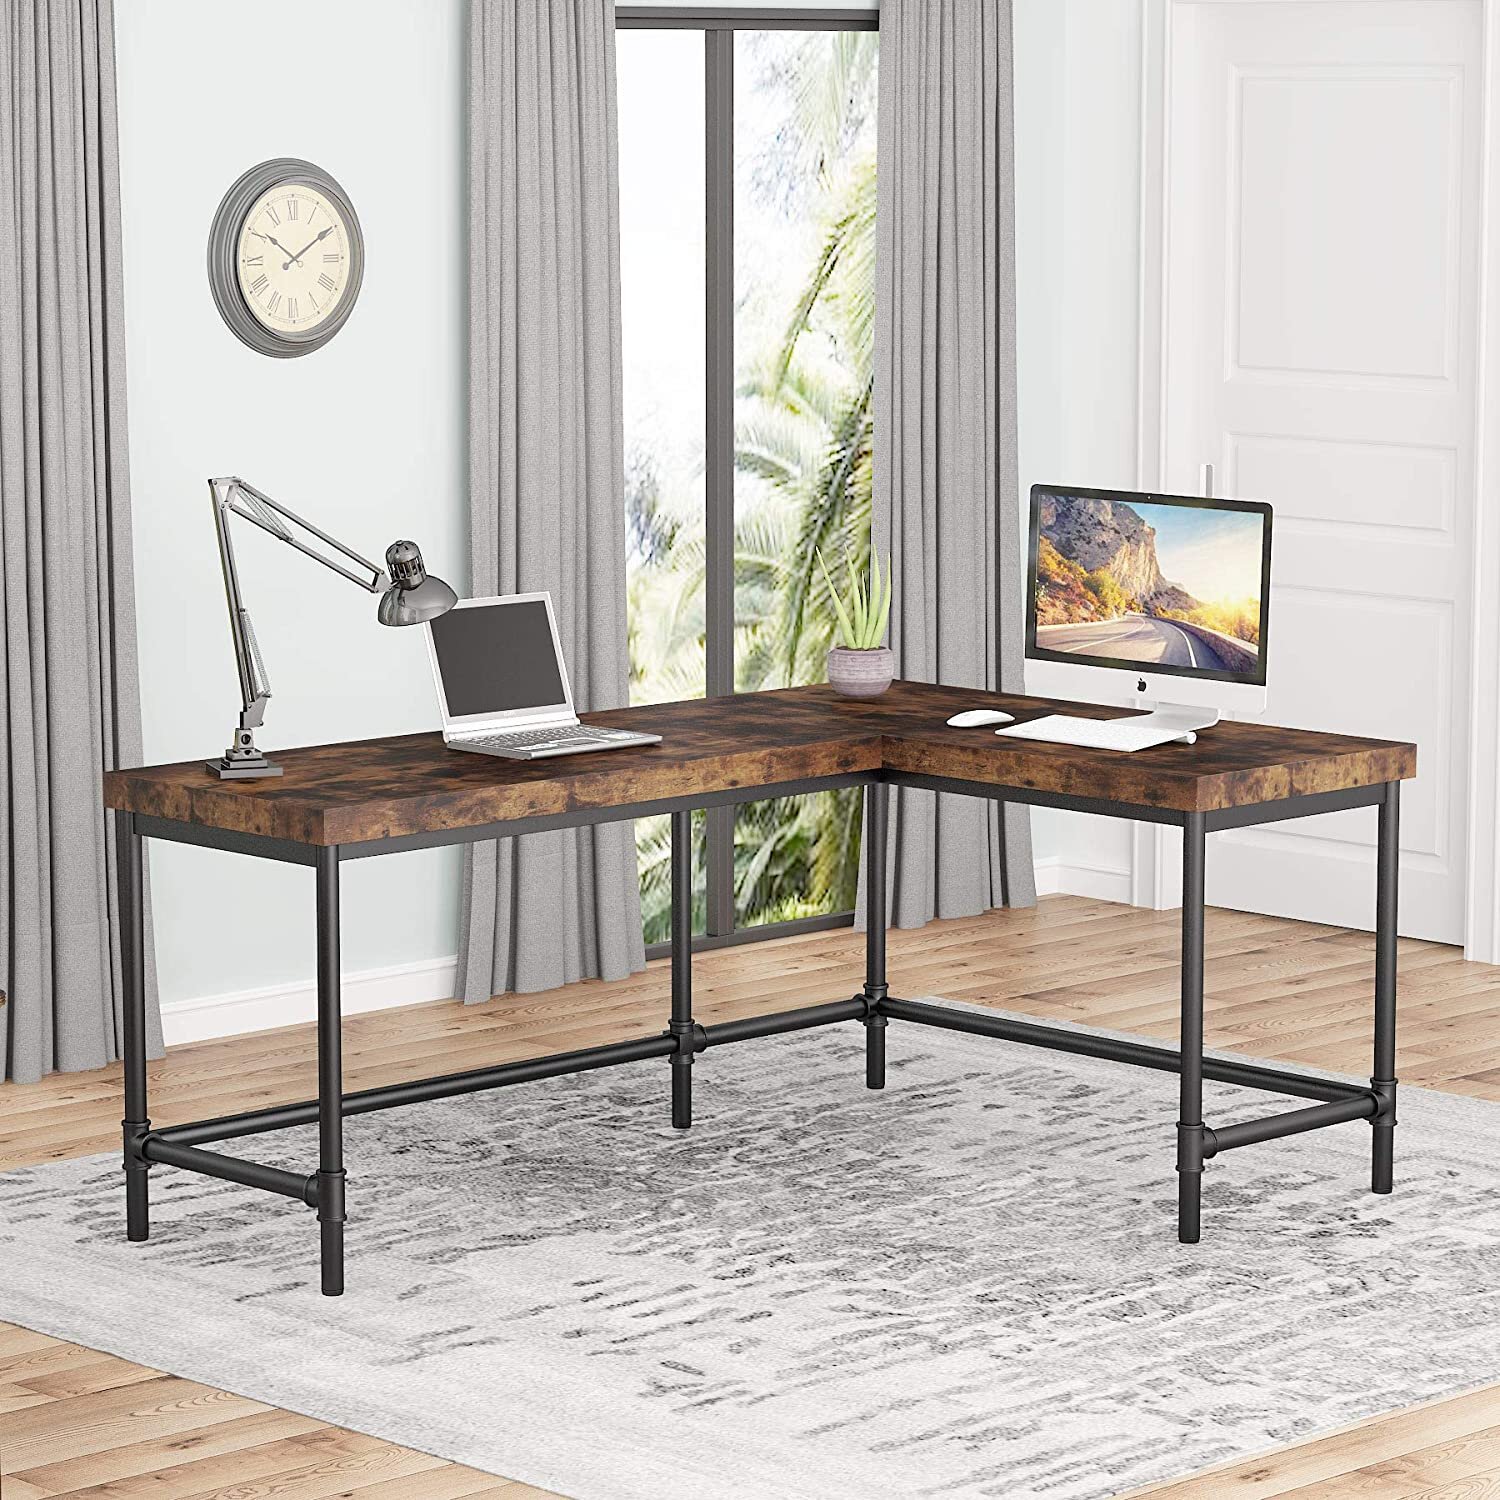 Home L-Shaped Desk Corner Modern Computer Desk PC Laptop Study Table Workstation 